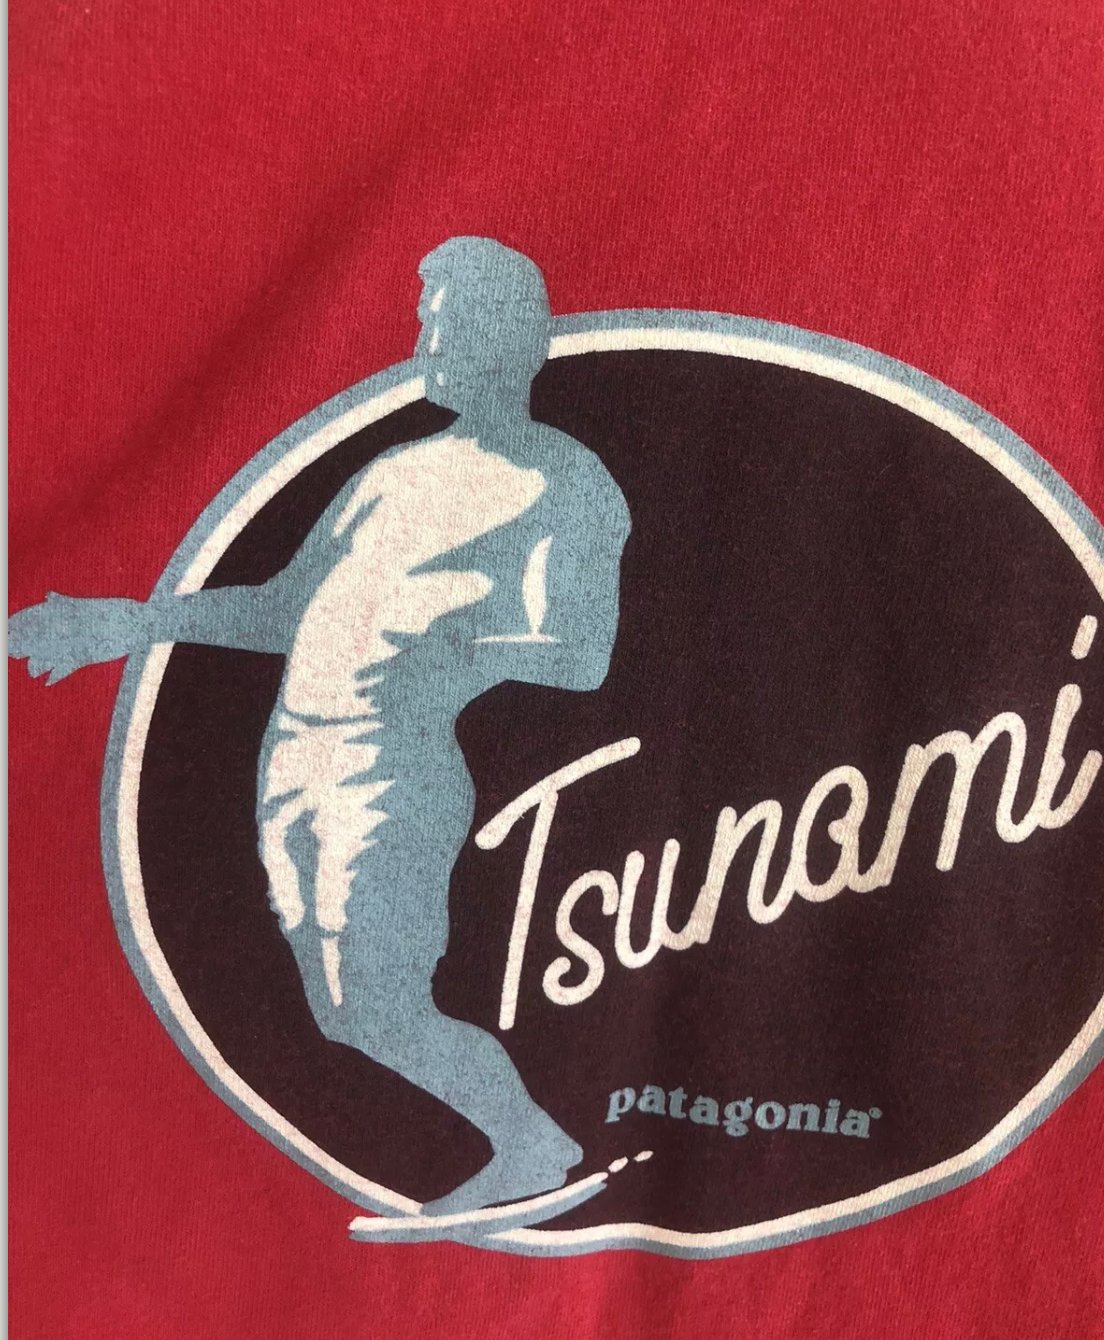 Image of Vintage Patagonia Tsunami Surfer T-shirt Xlarge 